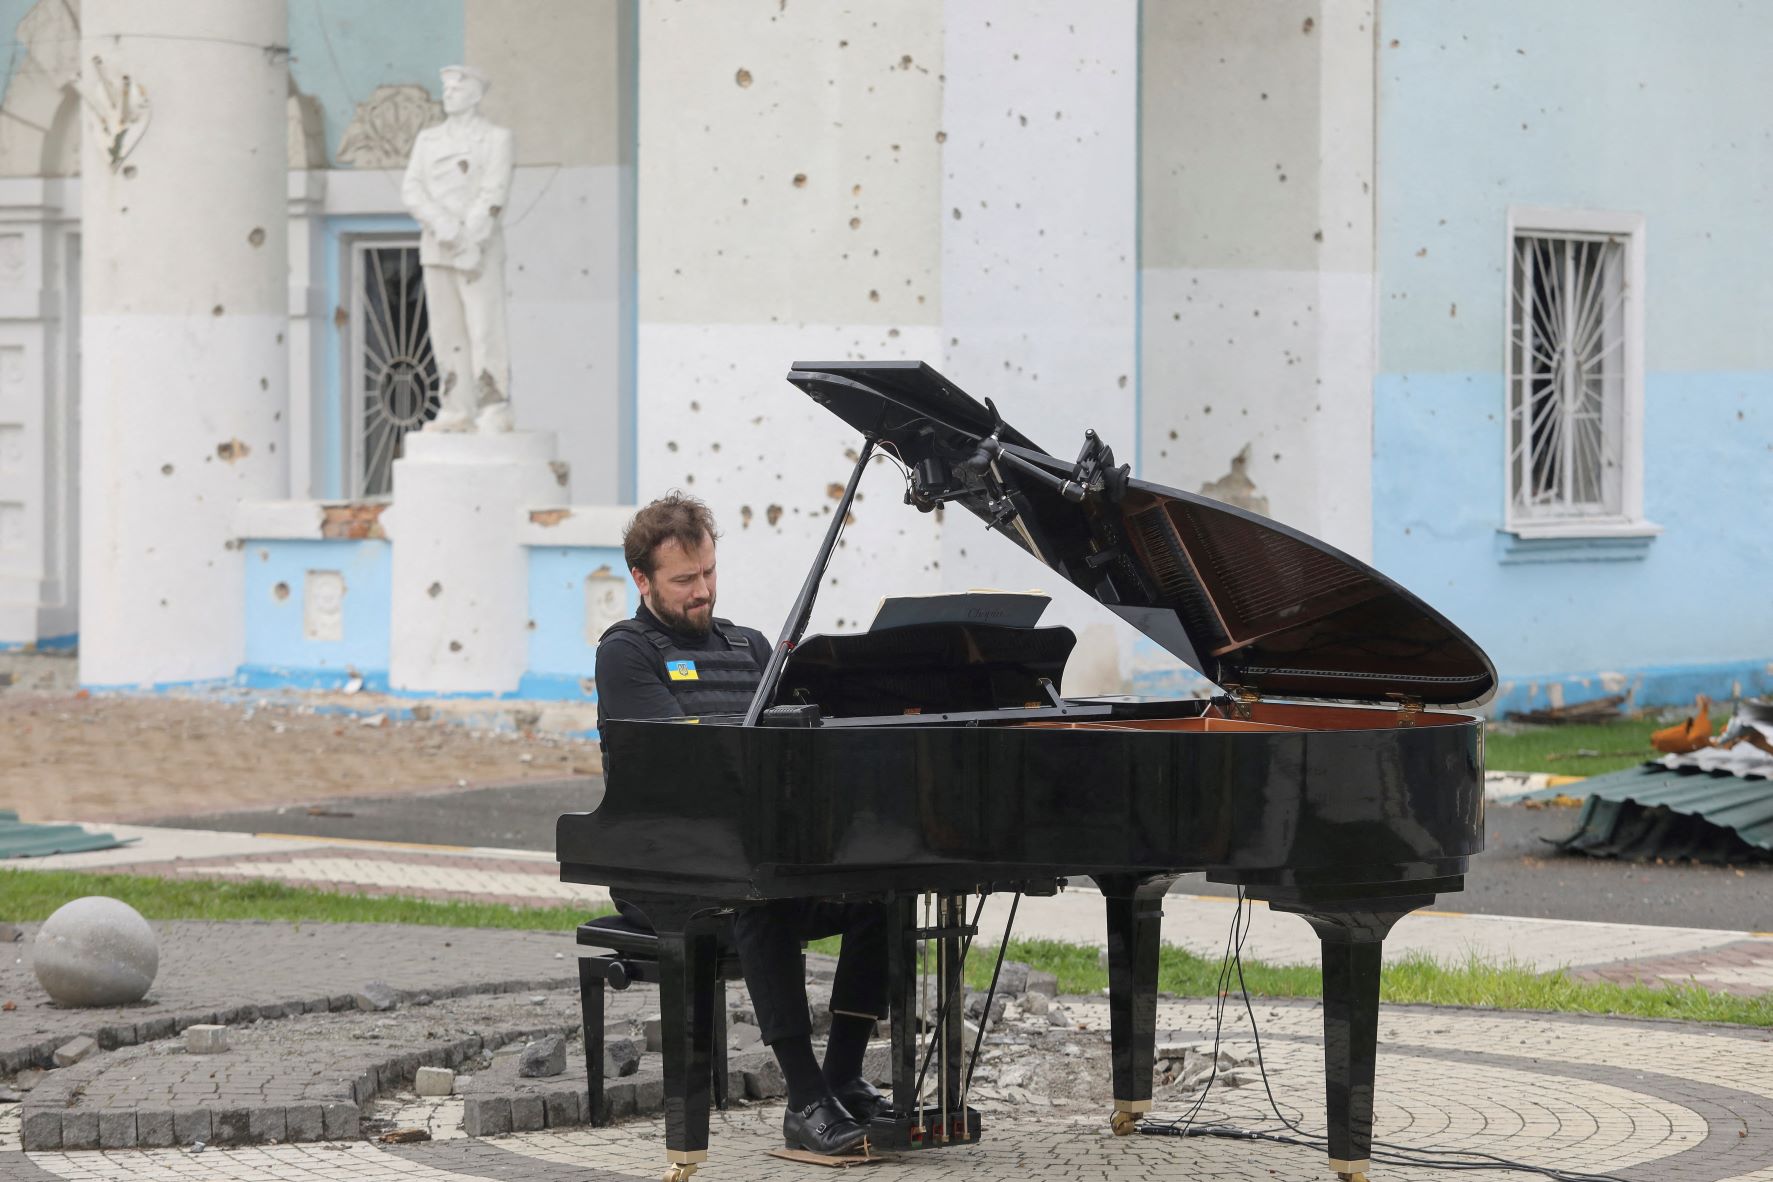 الموسيقي الليتواني داريوس مازنتاس يعزف على البيانو أثناء الغزو الروسي لأوكرانيا أمام "المبنى المركزي للثقافة" في ضاحية "إربين" بكييف، بتاريخ 26 إبريل 2022 